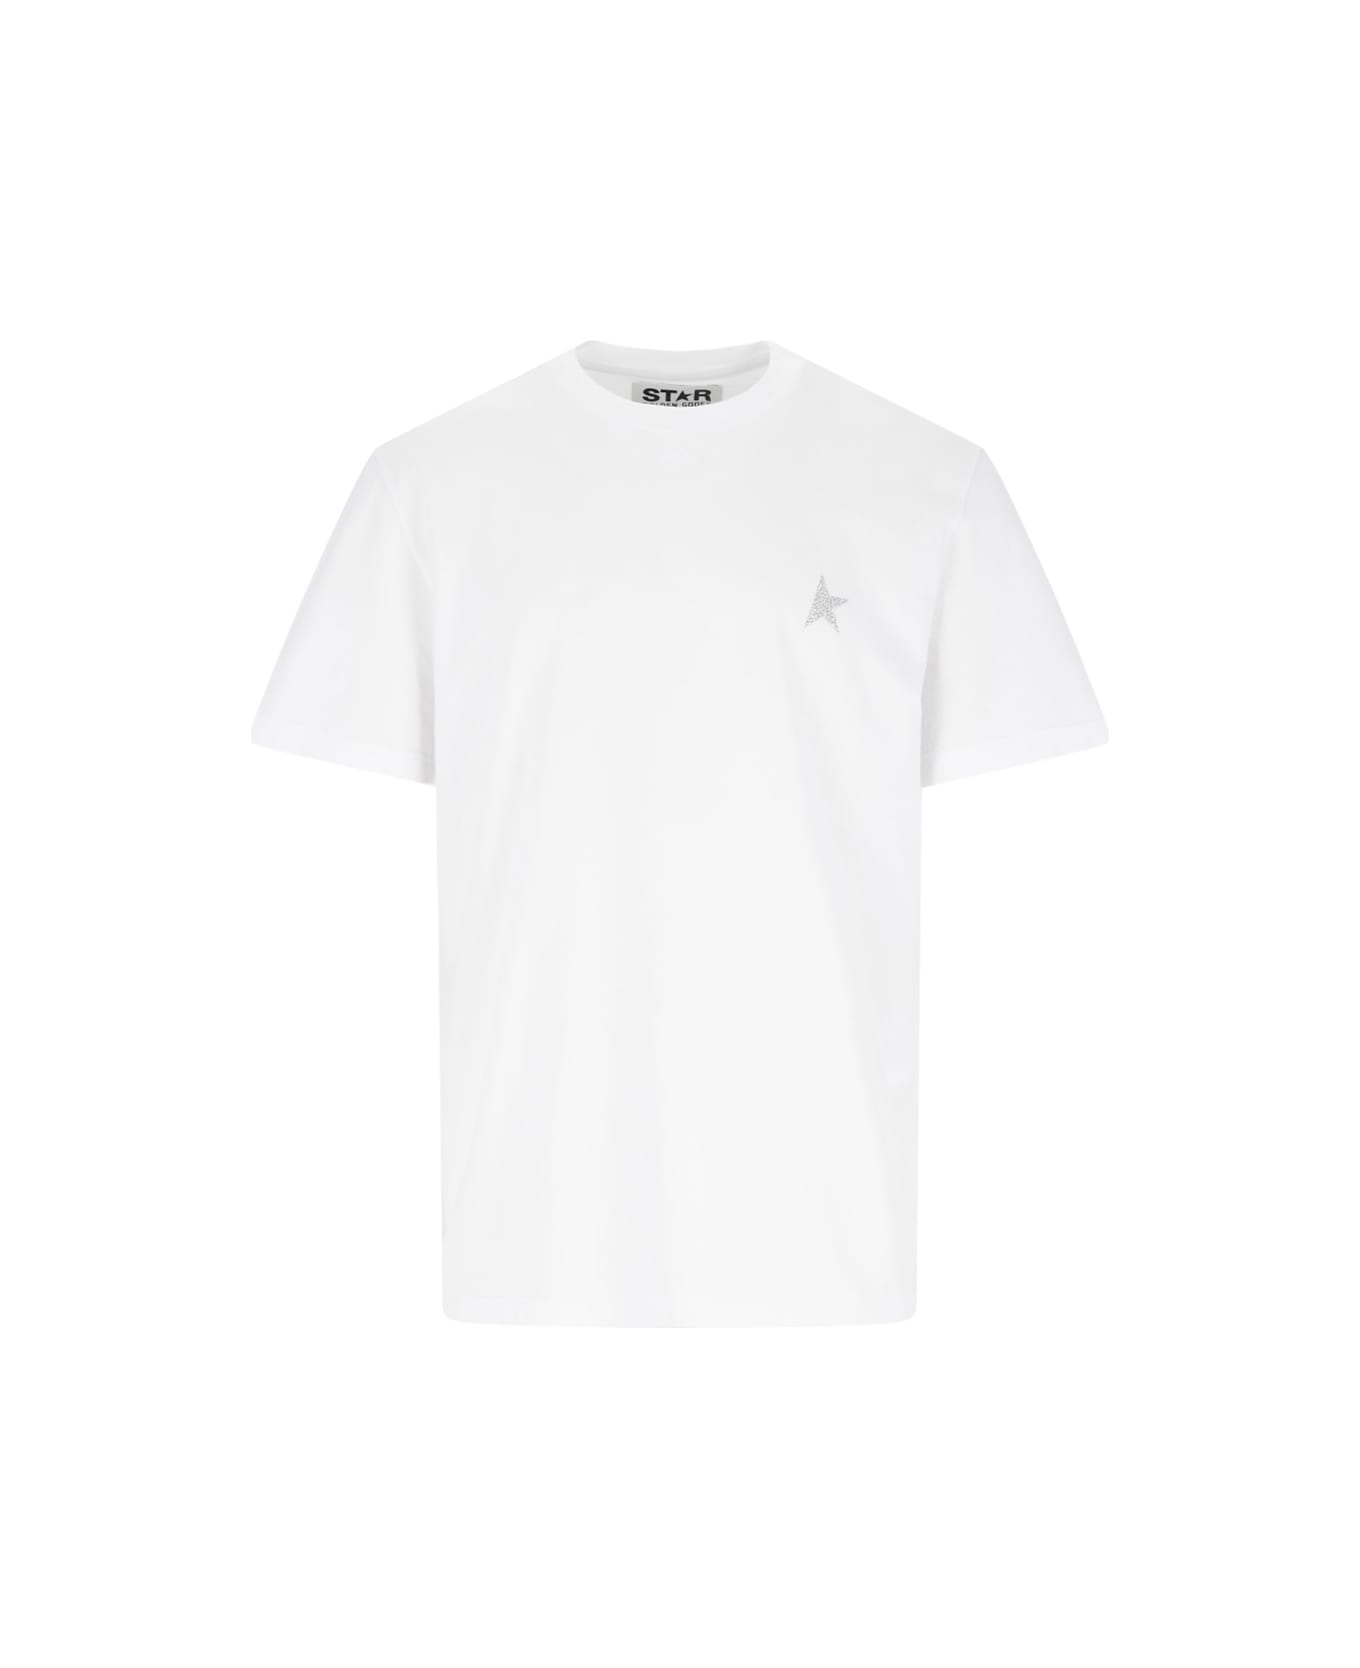 Golden Goose "star" Logo T-shirt - White